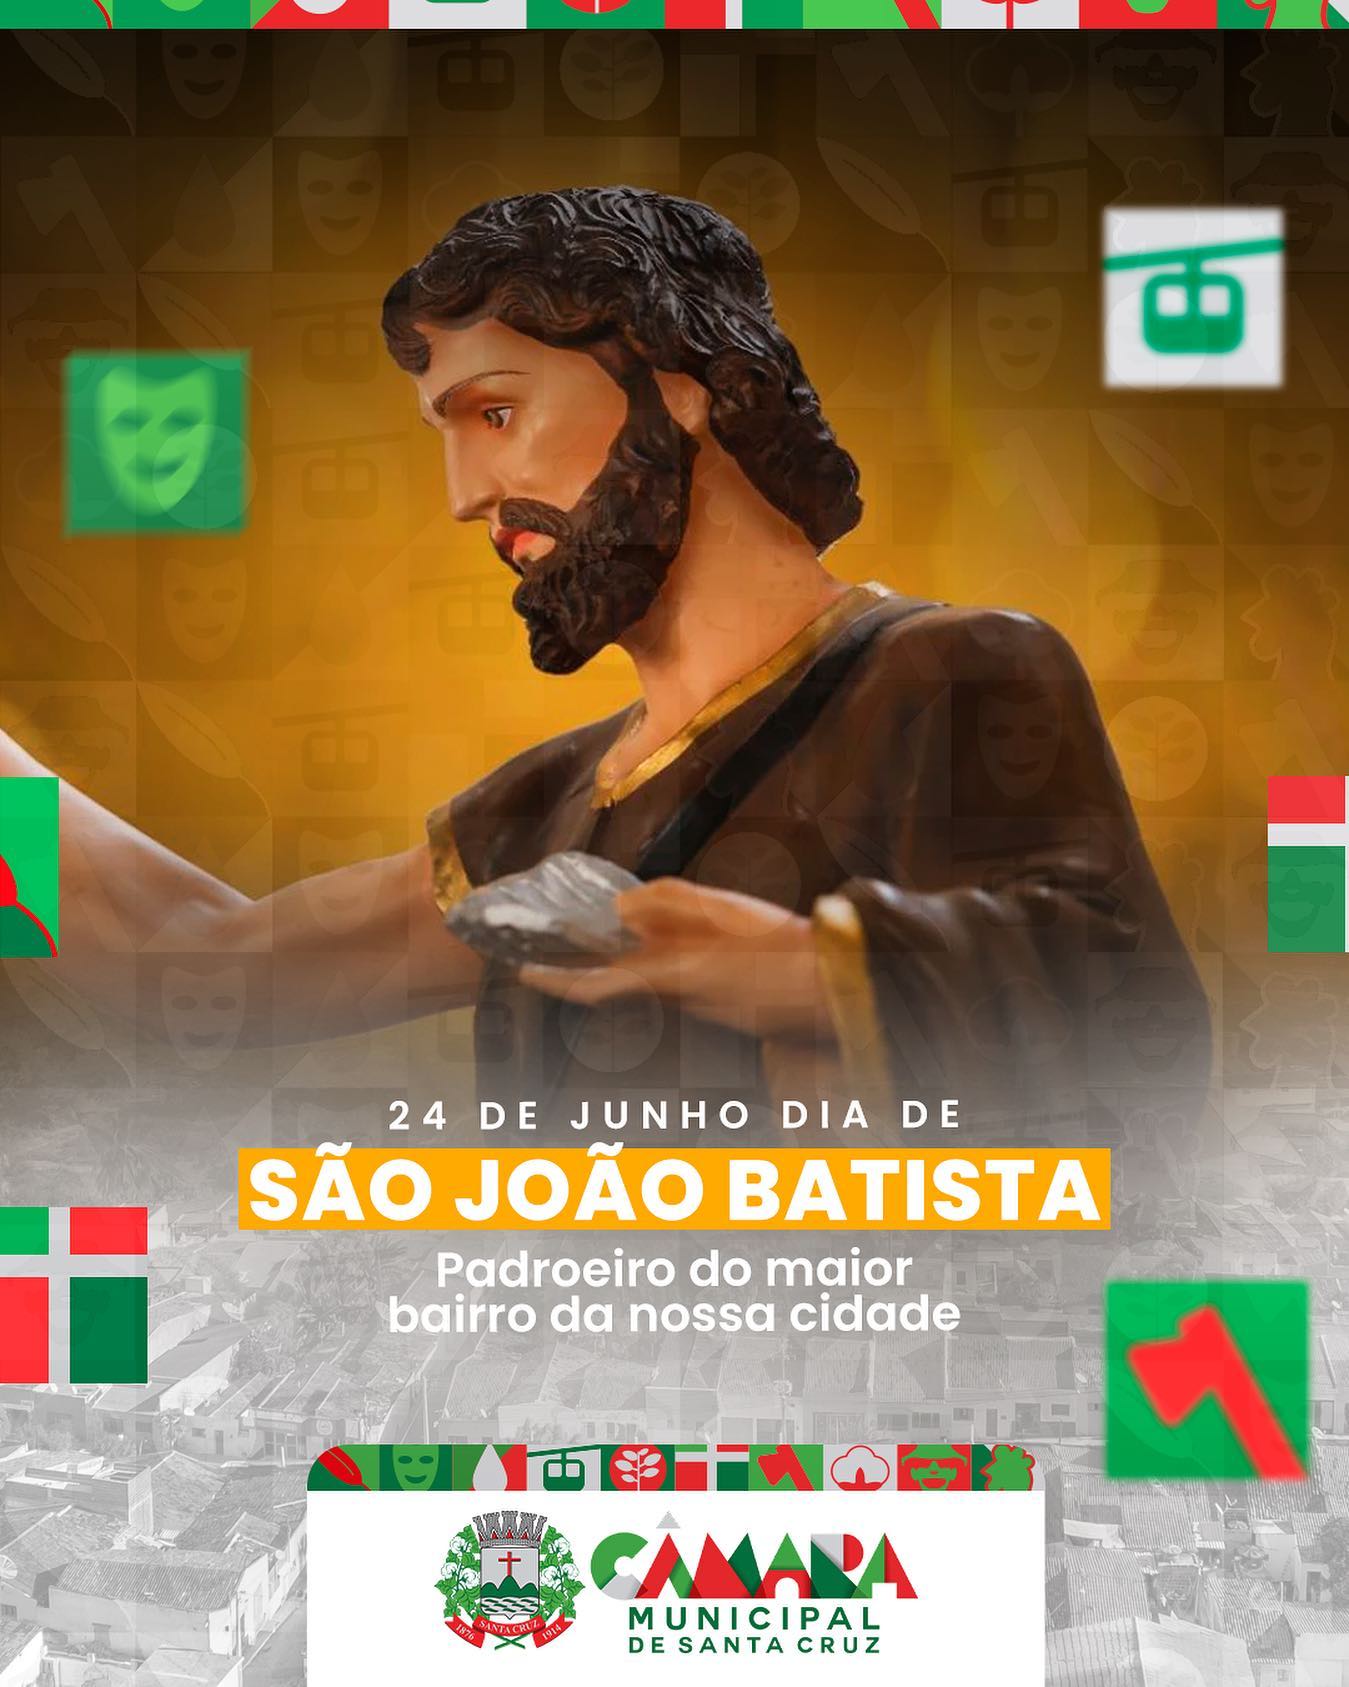 24 de Junho celebramos o dia de São João Batista